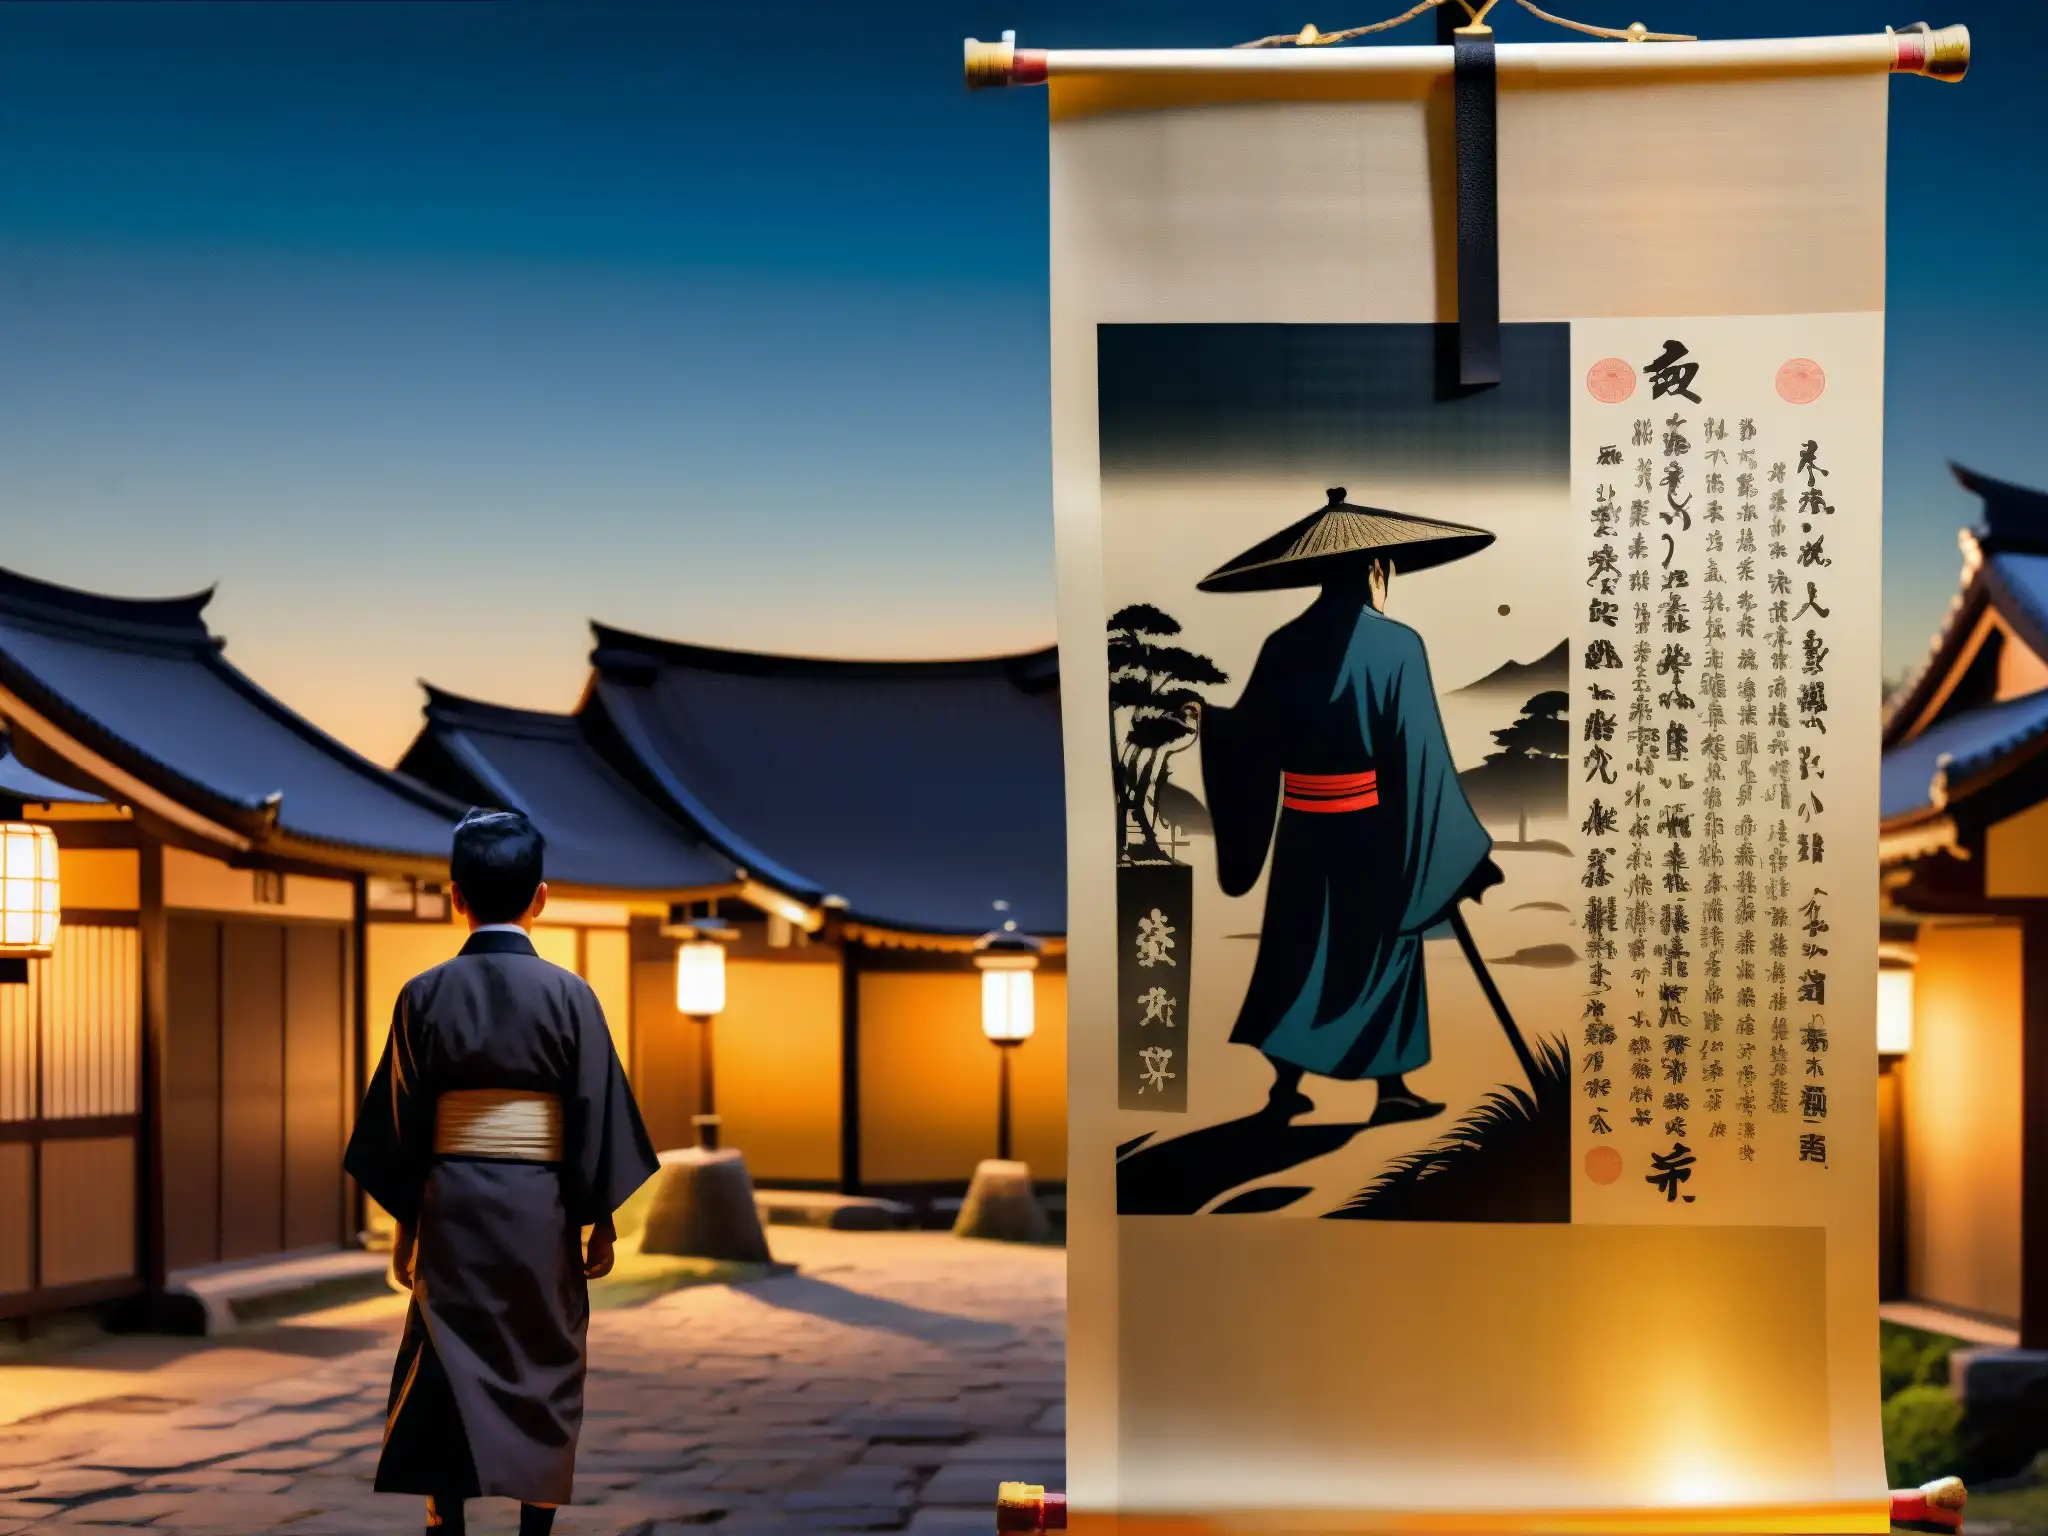 Un pergamino antiguo muestra al Hombre del Saco acechando en un pueblo japonés de noche